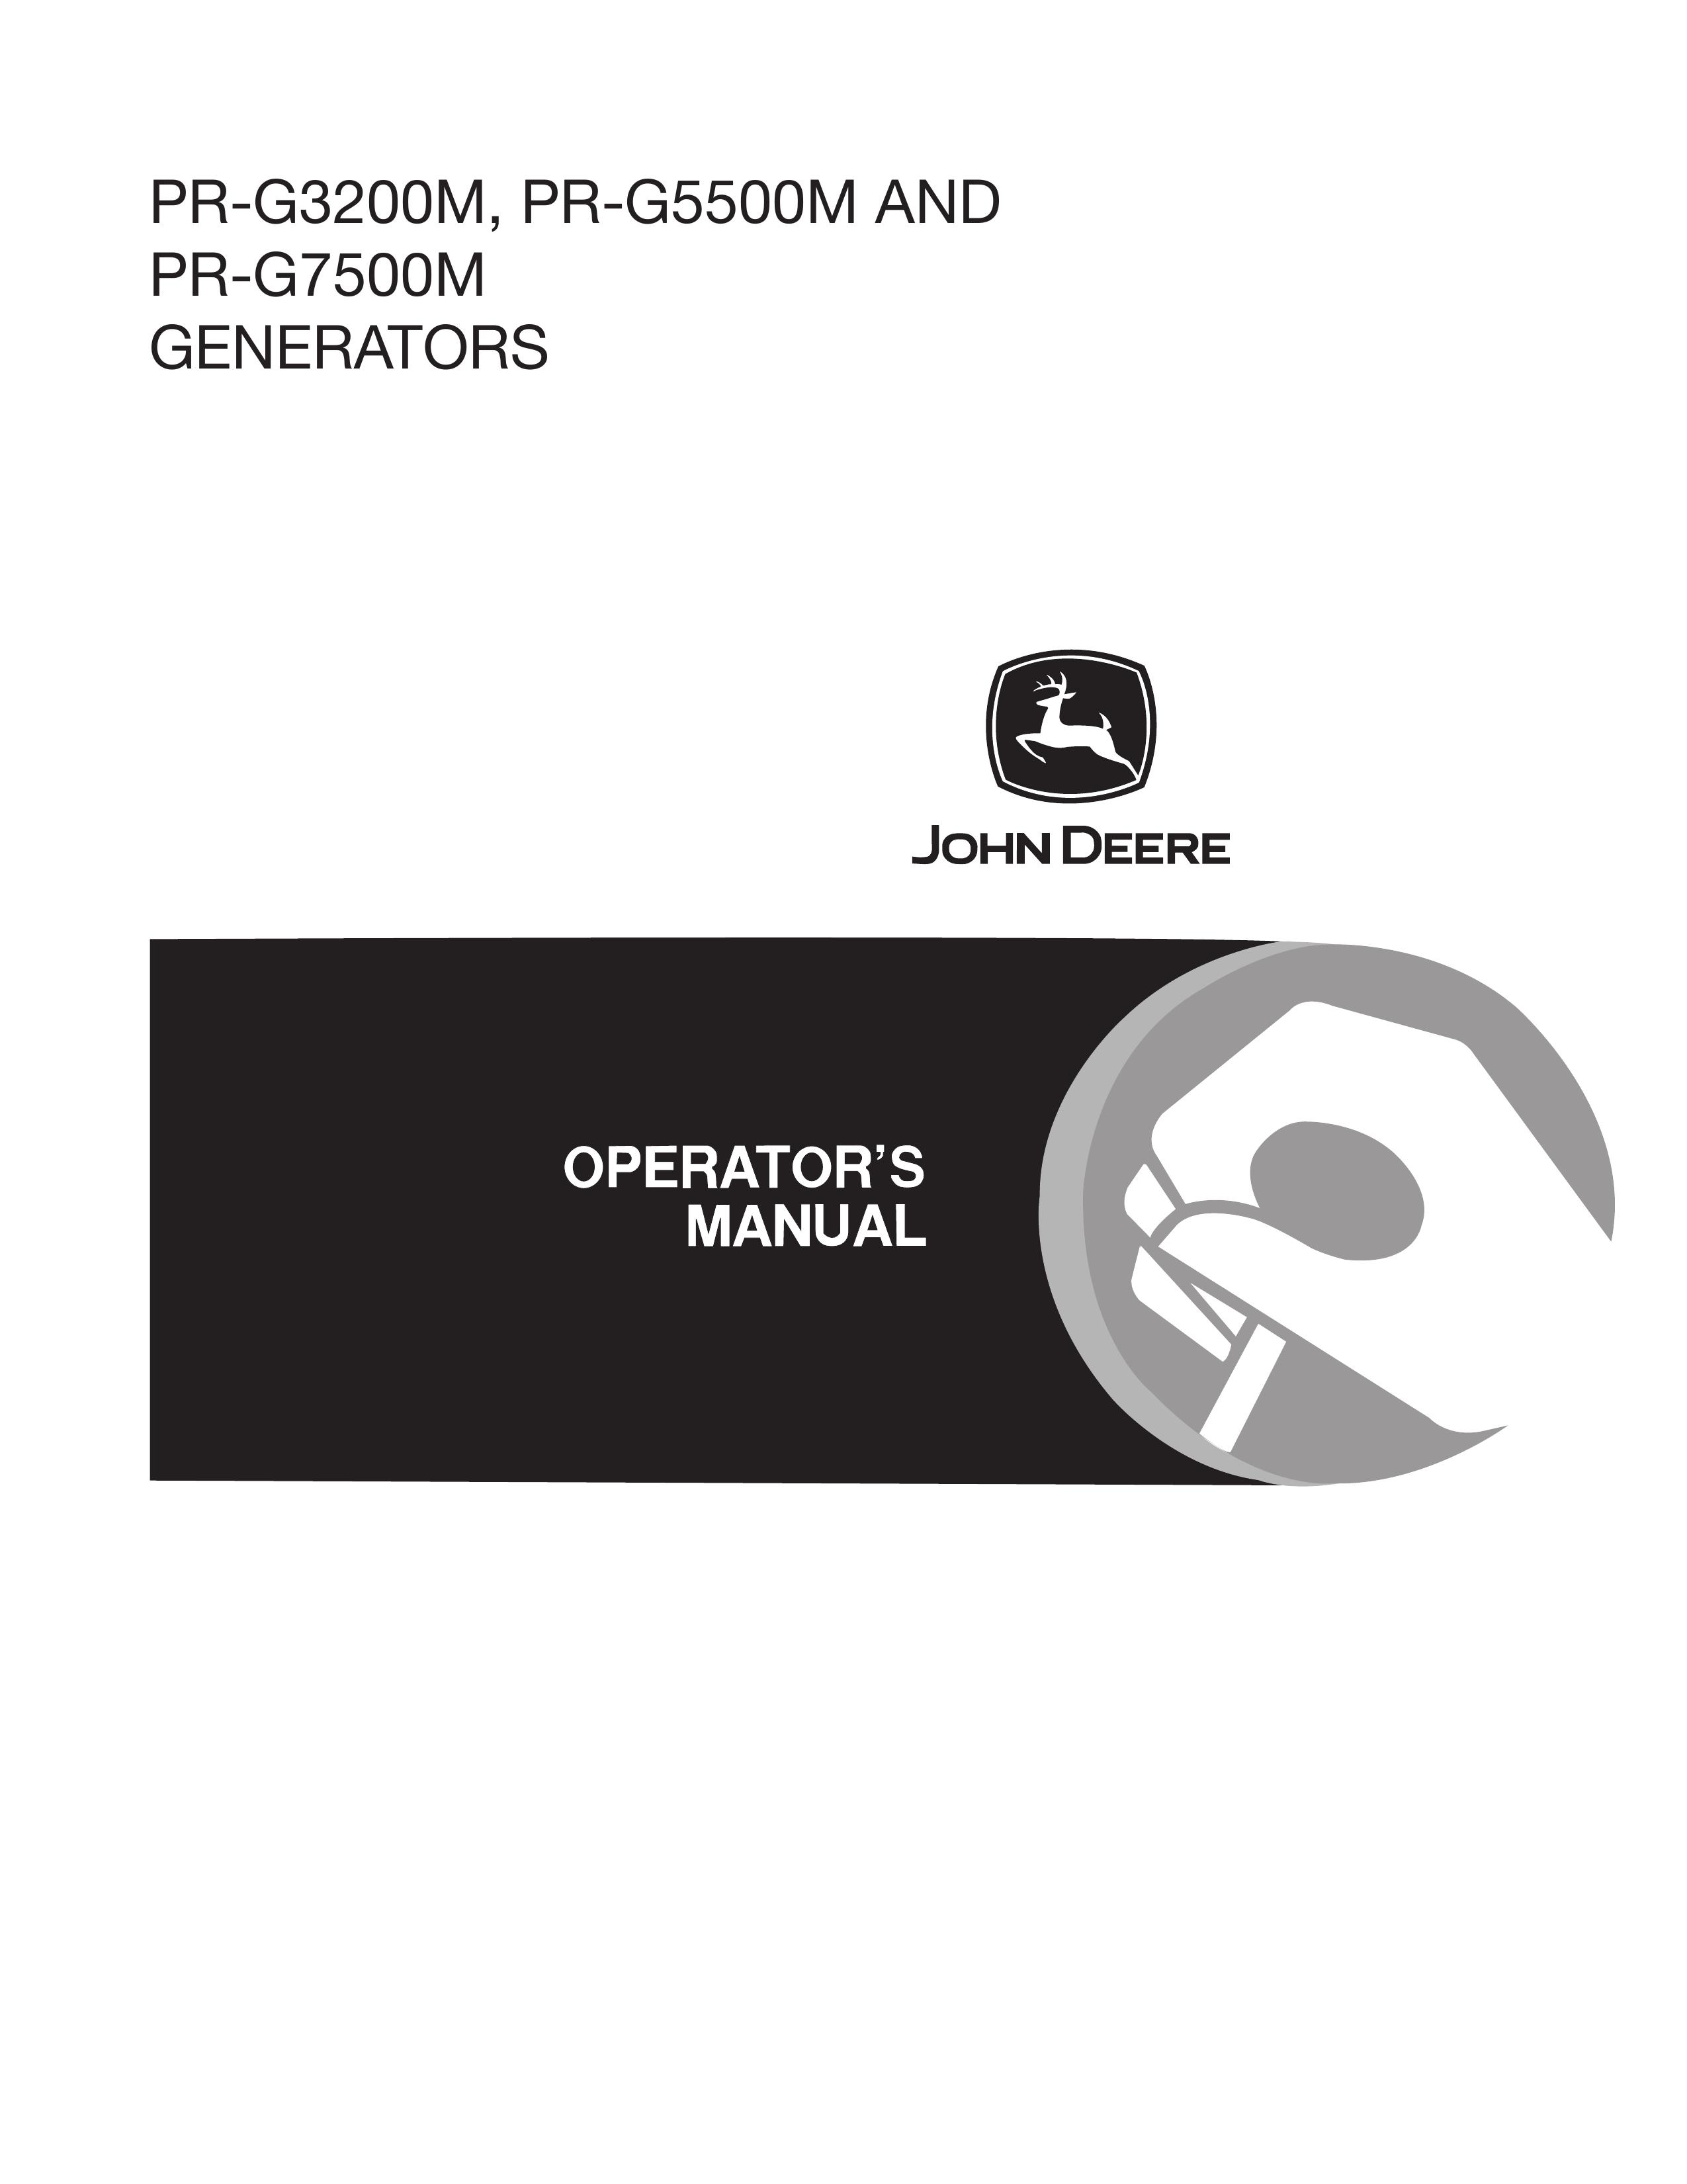 John Deere PR-G3200M Portable Generator User Manual